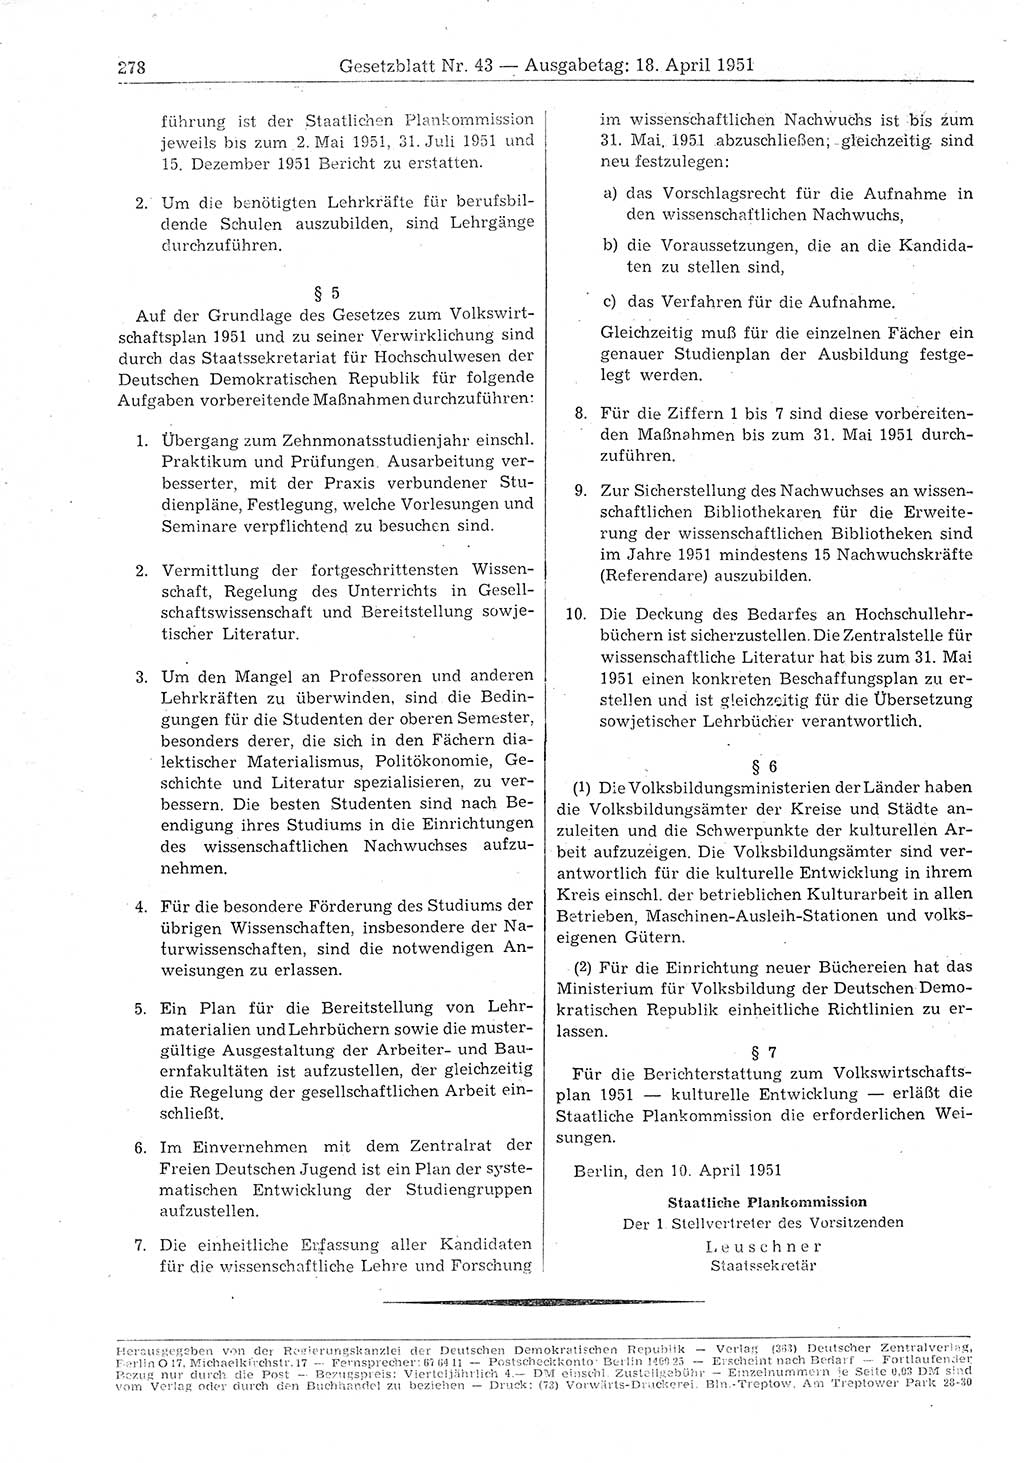 Gesetzblatt (GBl.) der Deutschen Demokratischen Republik (DDR) 1951, Seite 278 (GBl. DDR 1951, S. 278)